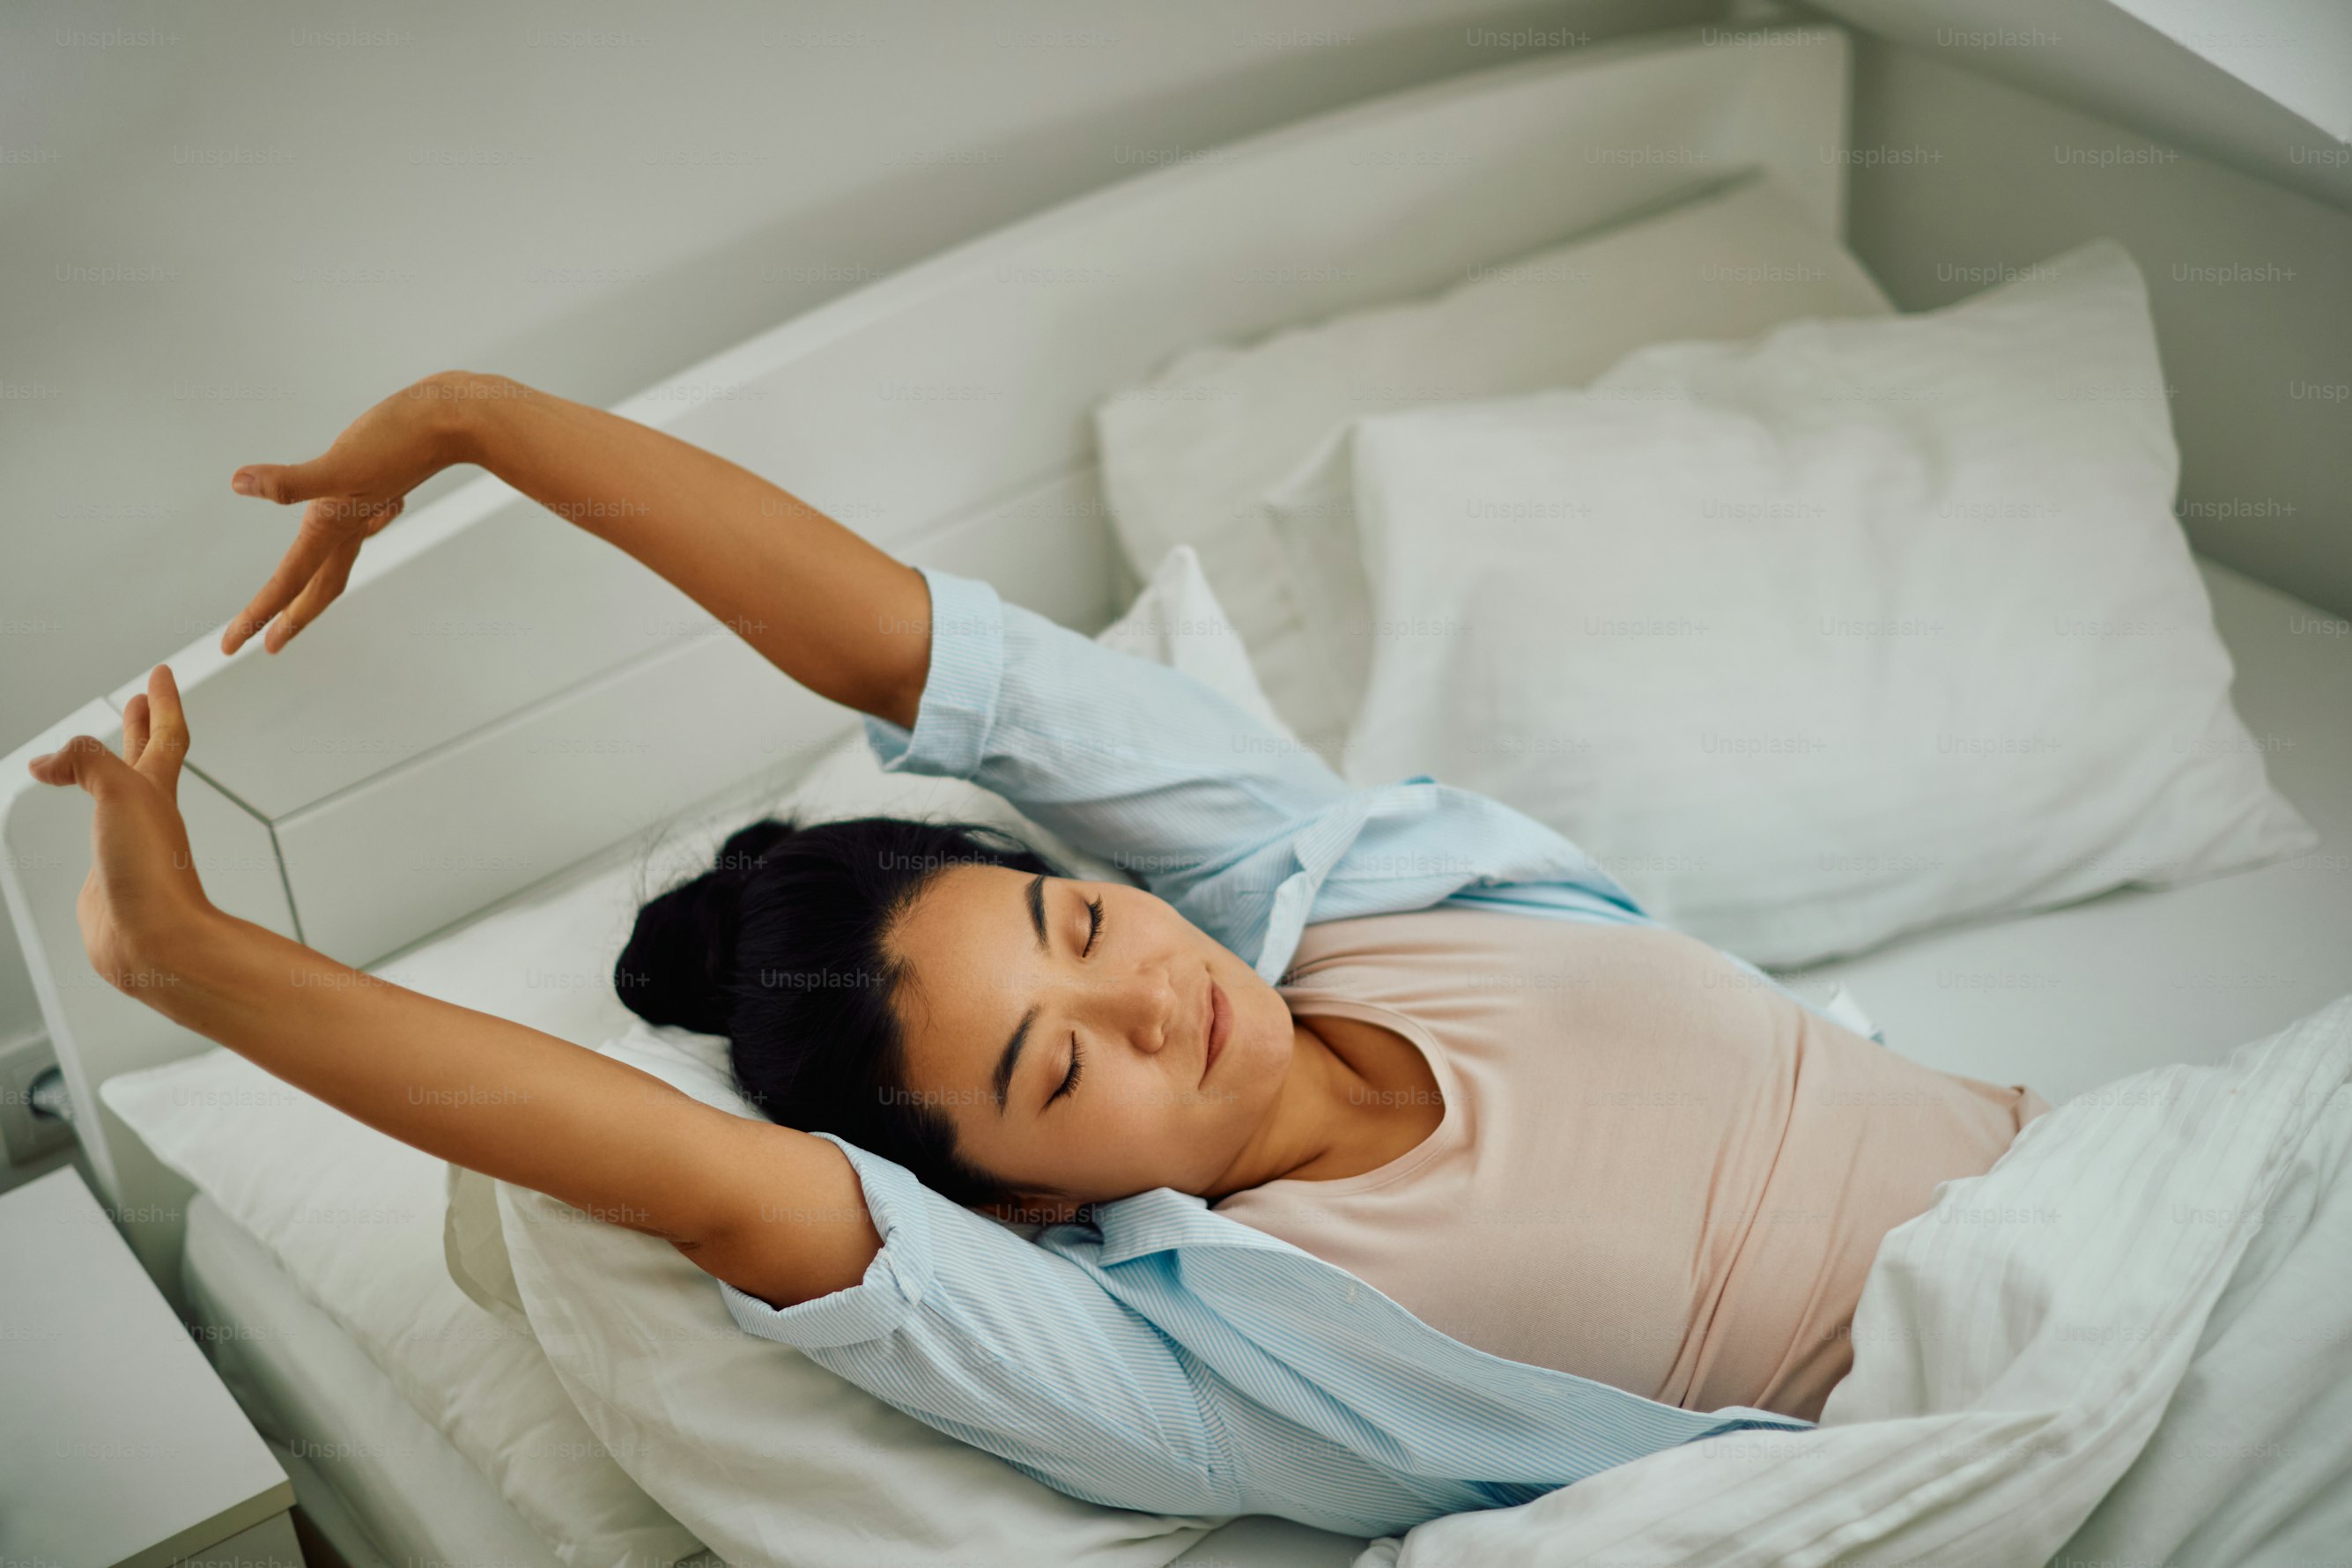 เคล็ดลับง่าย ๆ เพื่อเพิ่มประสิทธิภาพการนอนหลับของคุณ